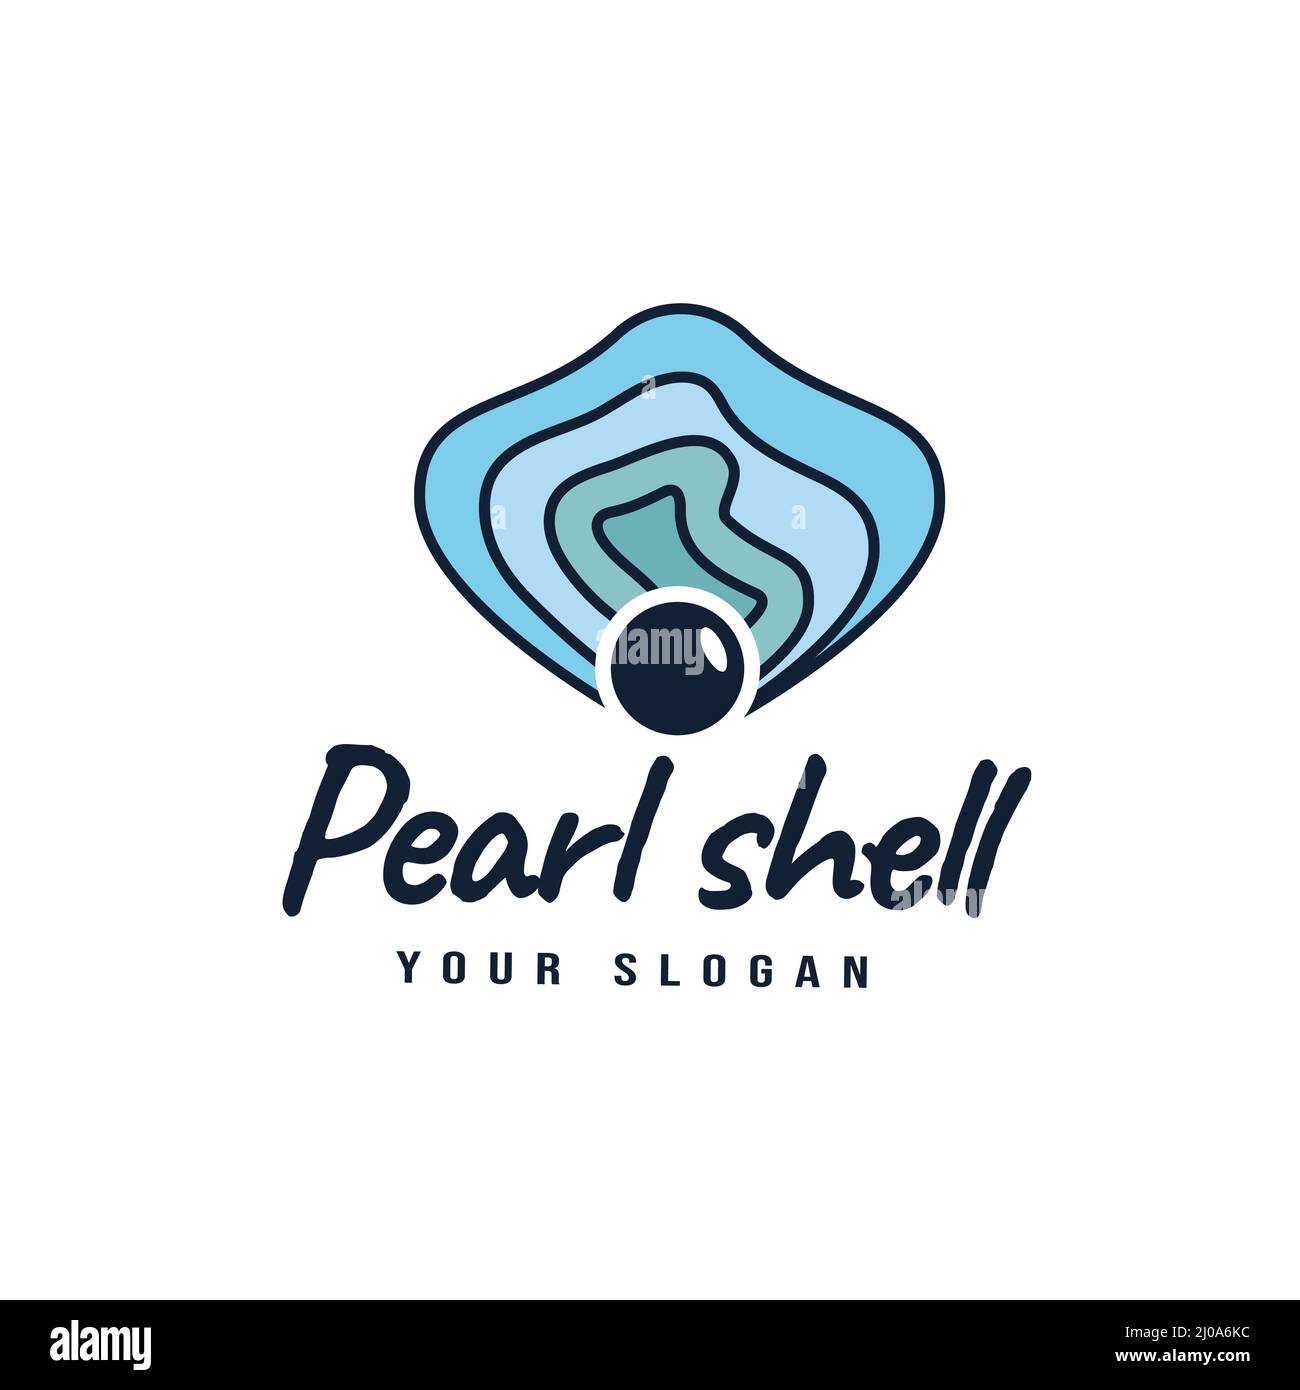 Logo Design Branding Pearl Oyster Scallop Shell Oyster Cockle Clam Mussel, Gemme, Gioielli, decorazione nautica. Illustrazione vettoriale in linea d'arte alla moda Illustrazione Vettoriale